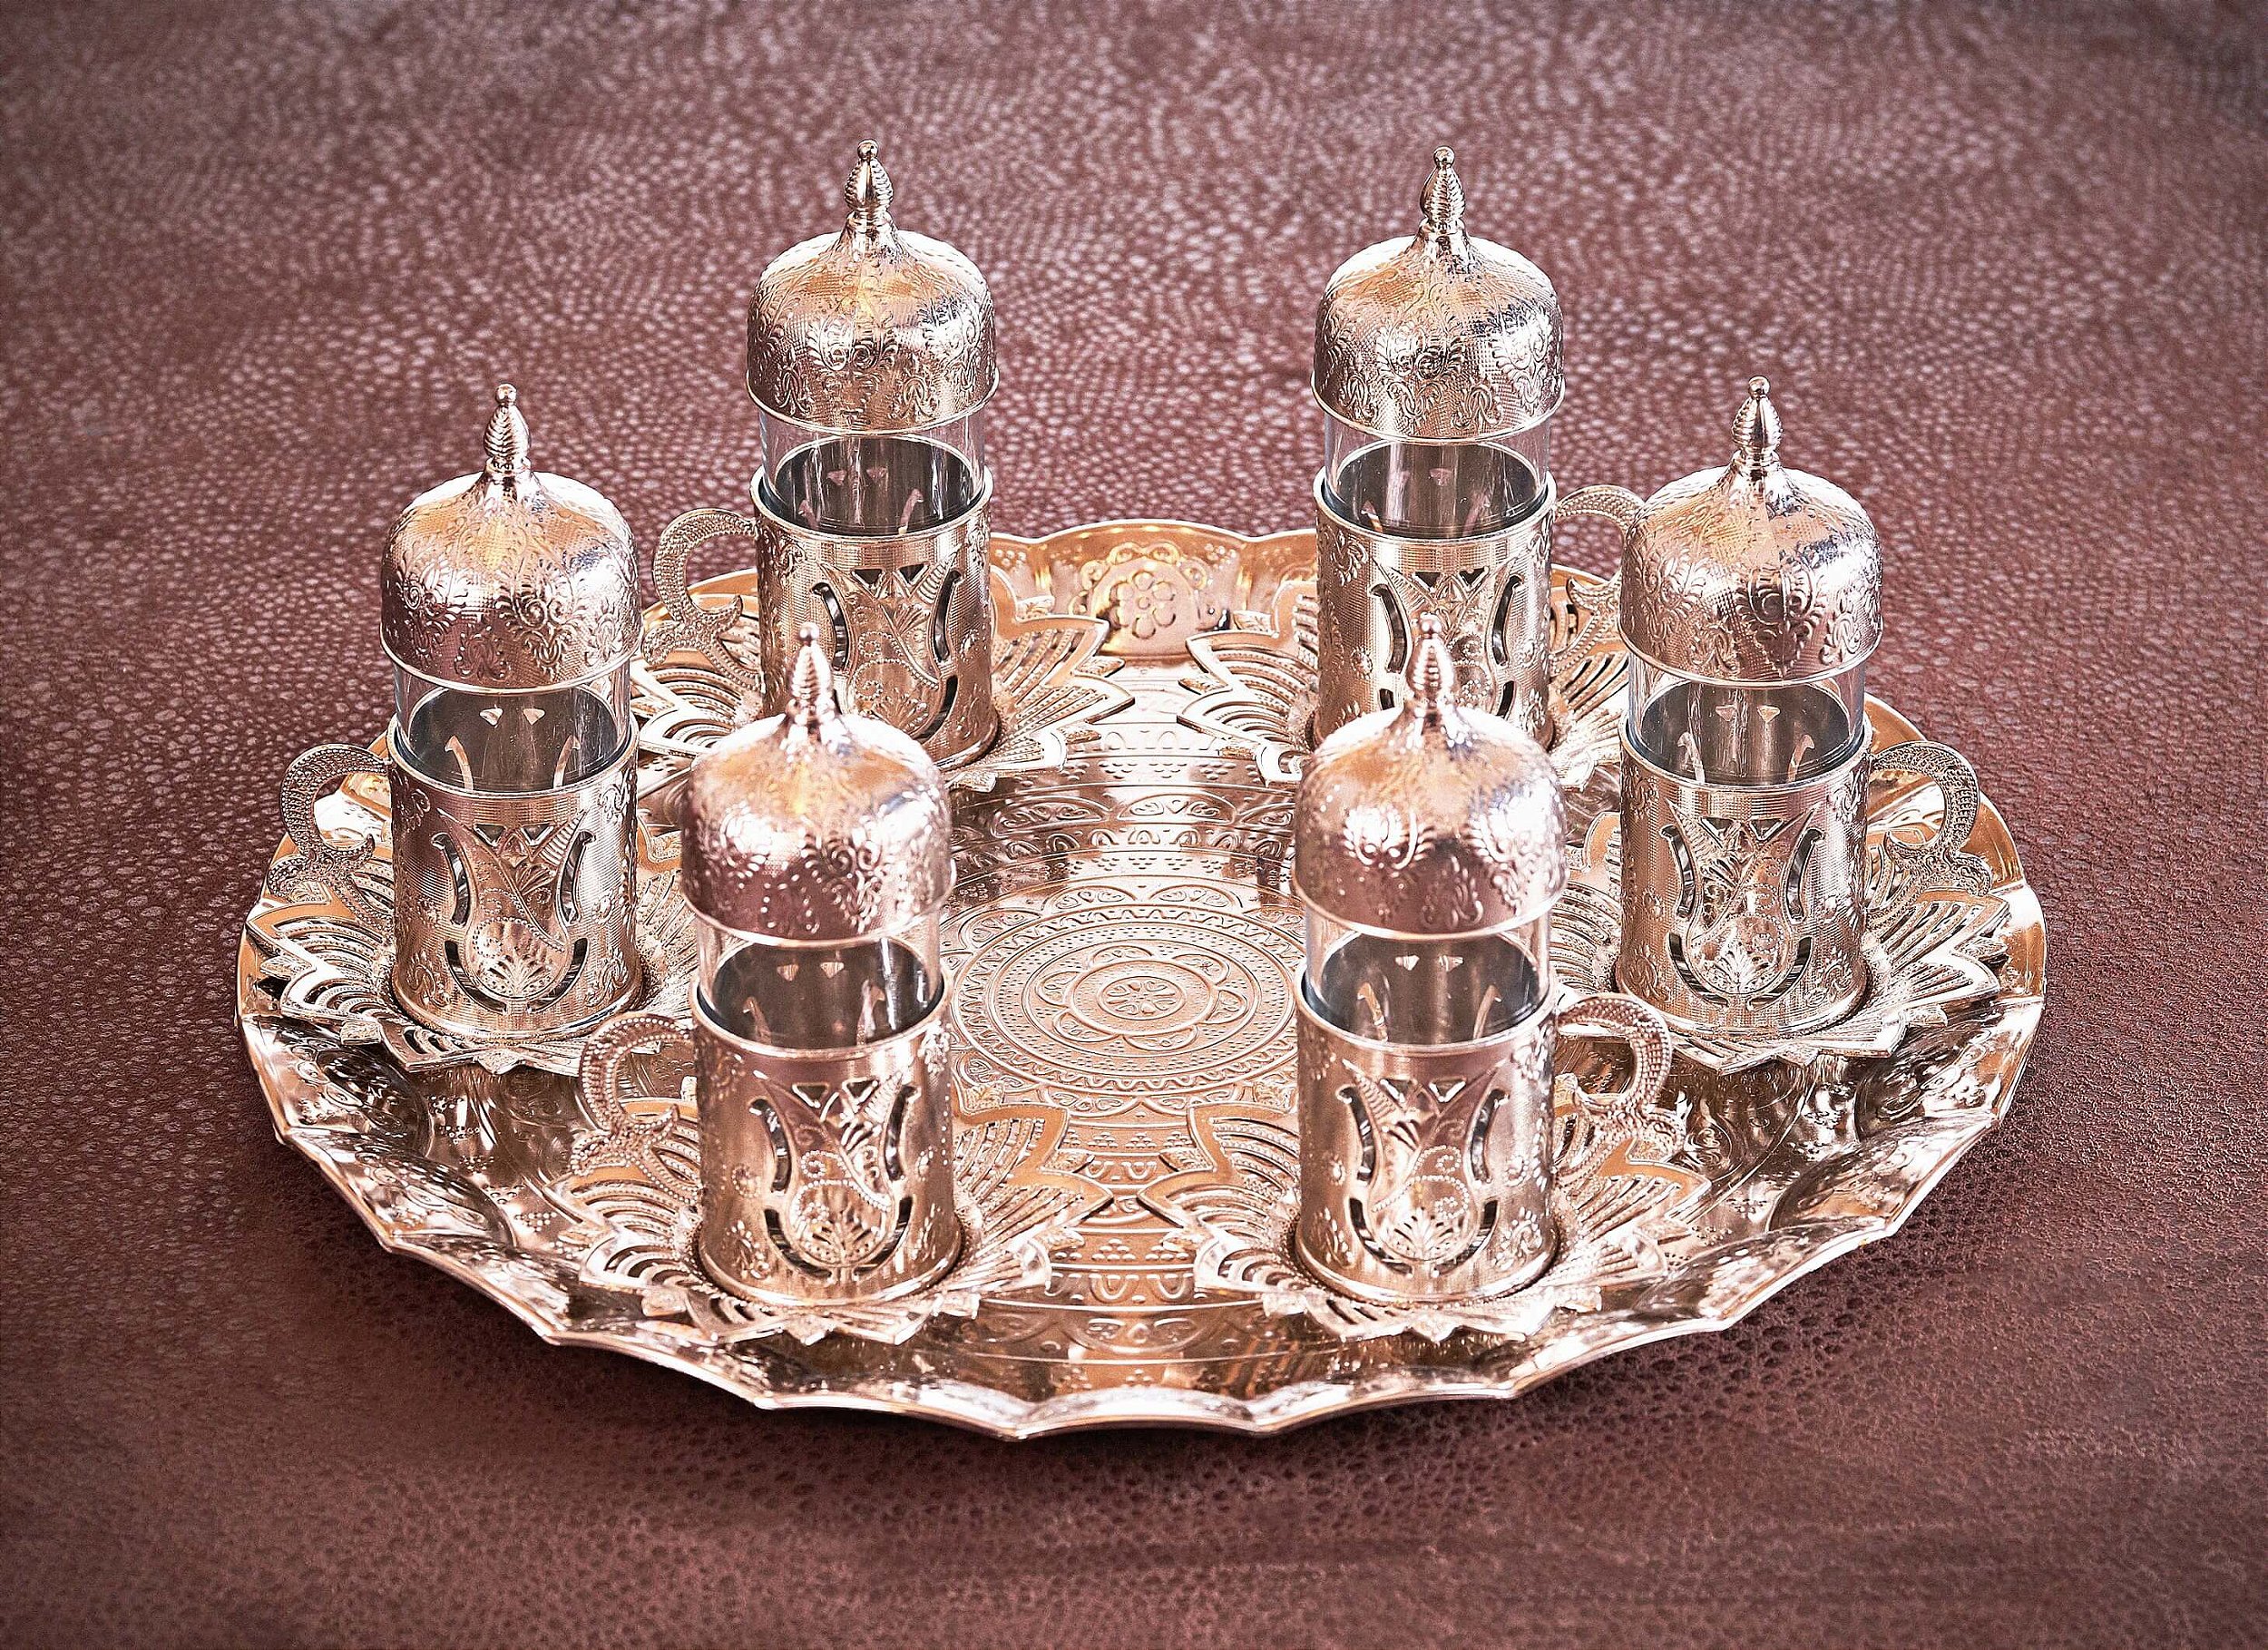 Conjunto 6 Copos de Chá Turco com Pires - Artesanato Turco - Decoração Turca  - Modelo Antara